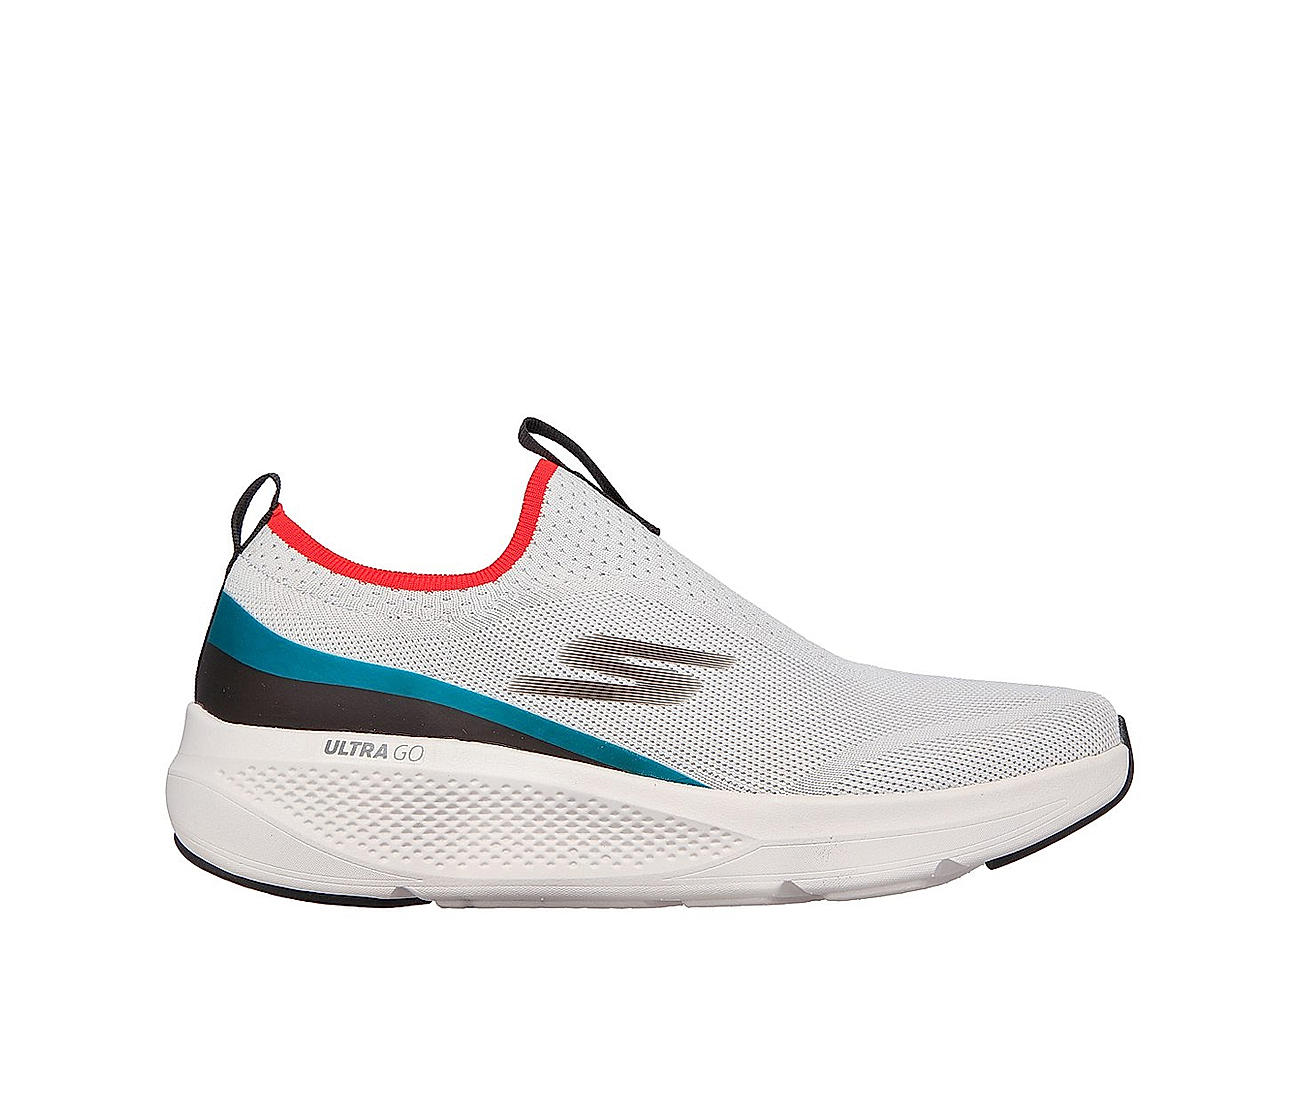 Skechers Running Shoes For Men ( Navy Blue ) for Men - Buy Skechers Men's  Sport Shoes at 5% off. |Paytm Mall